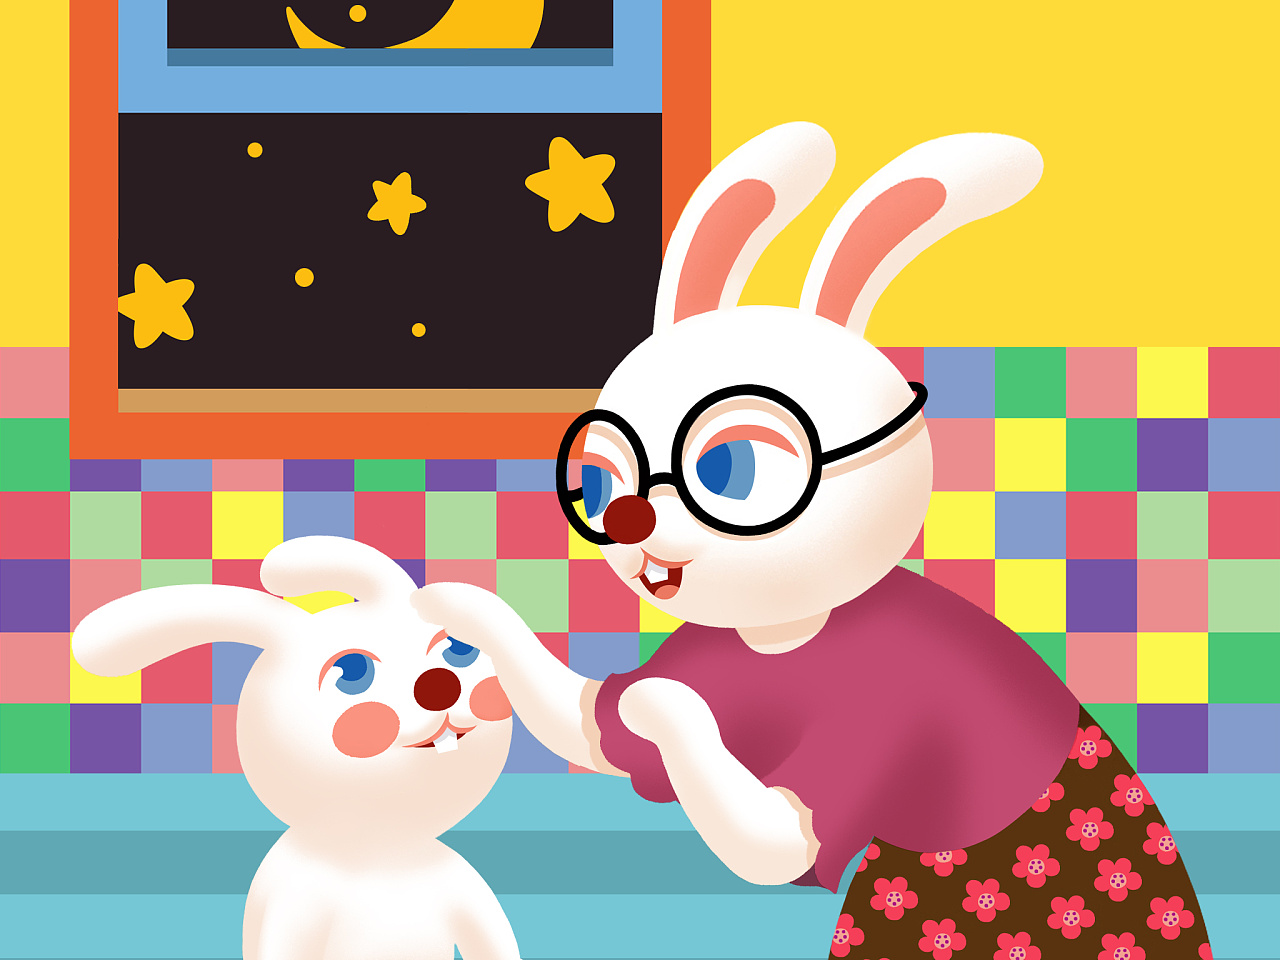 小兔子小动物动漫卡通动物图片素材免费下载 - 觅知网